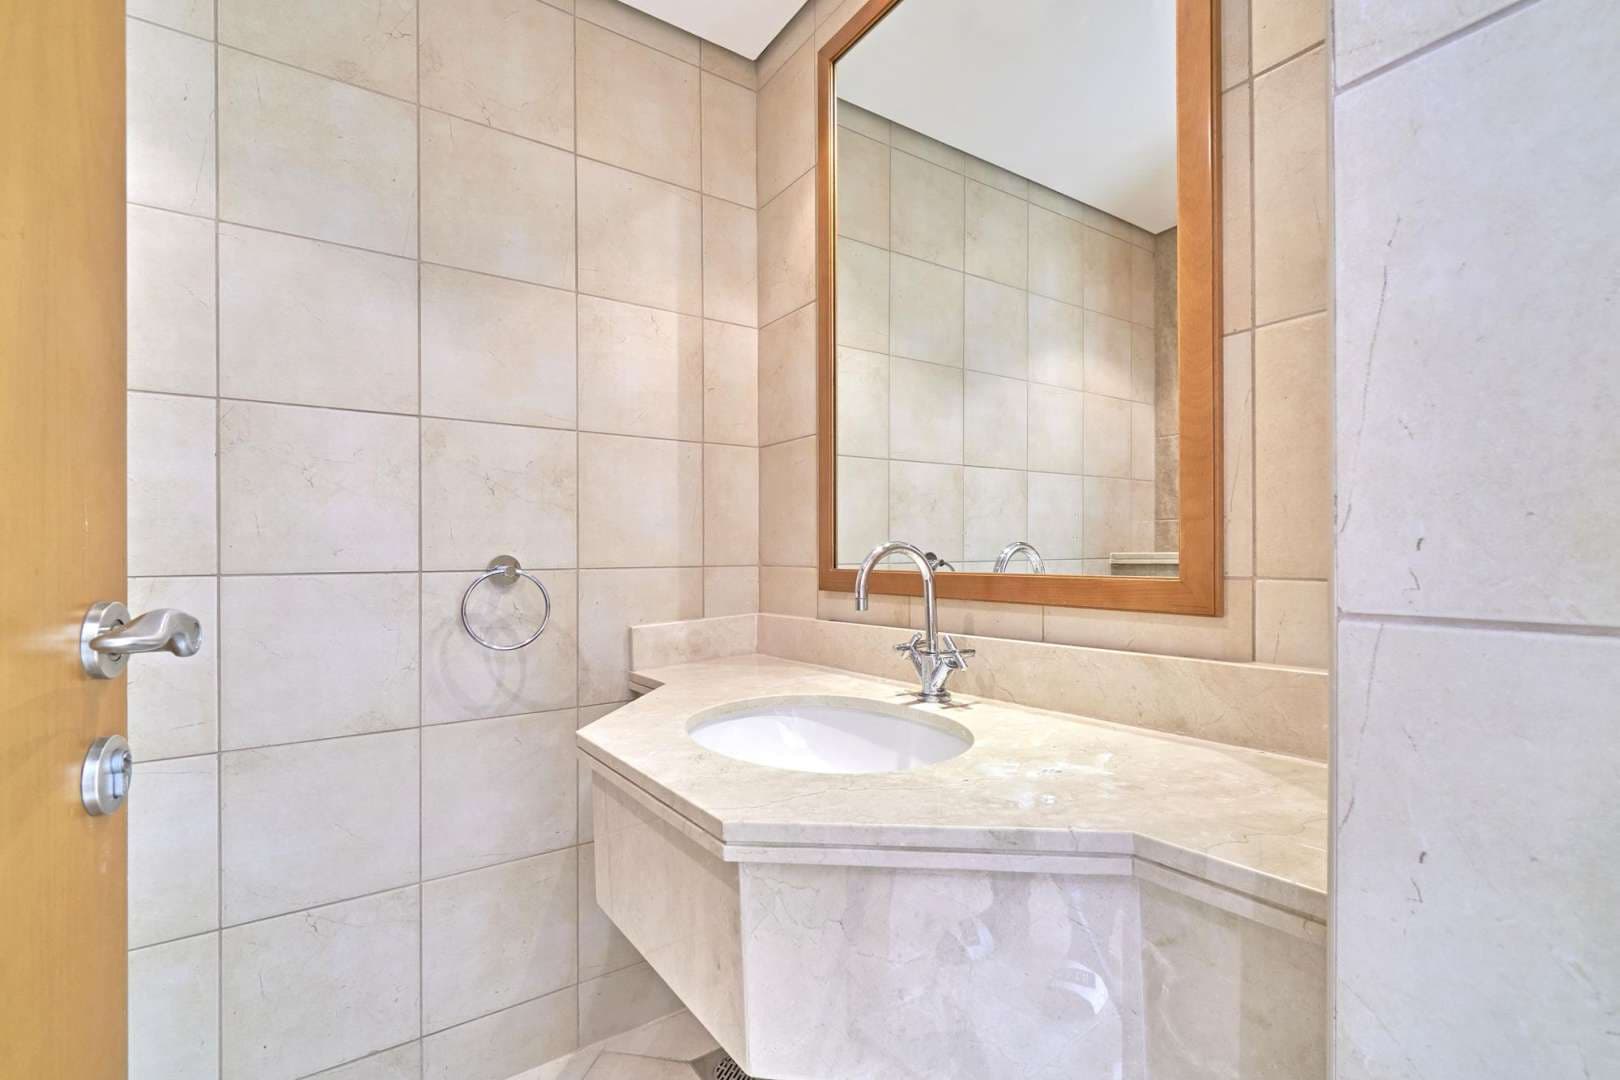 2 Bedroom Apartment For Rent Al Fattan Marine Tower Lp05664 2d9278a1cb5cd600.jpg